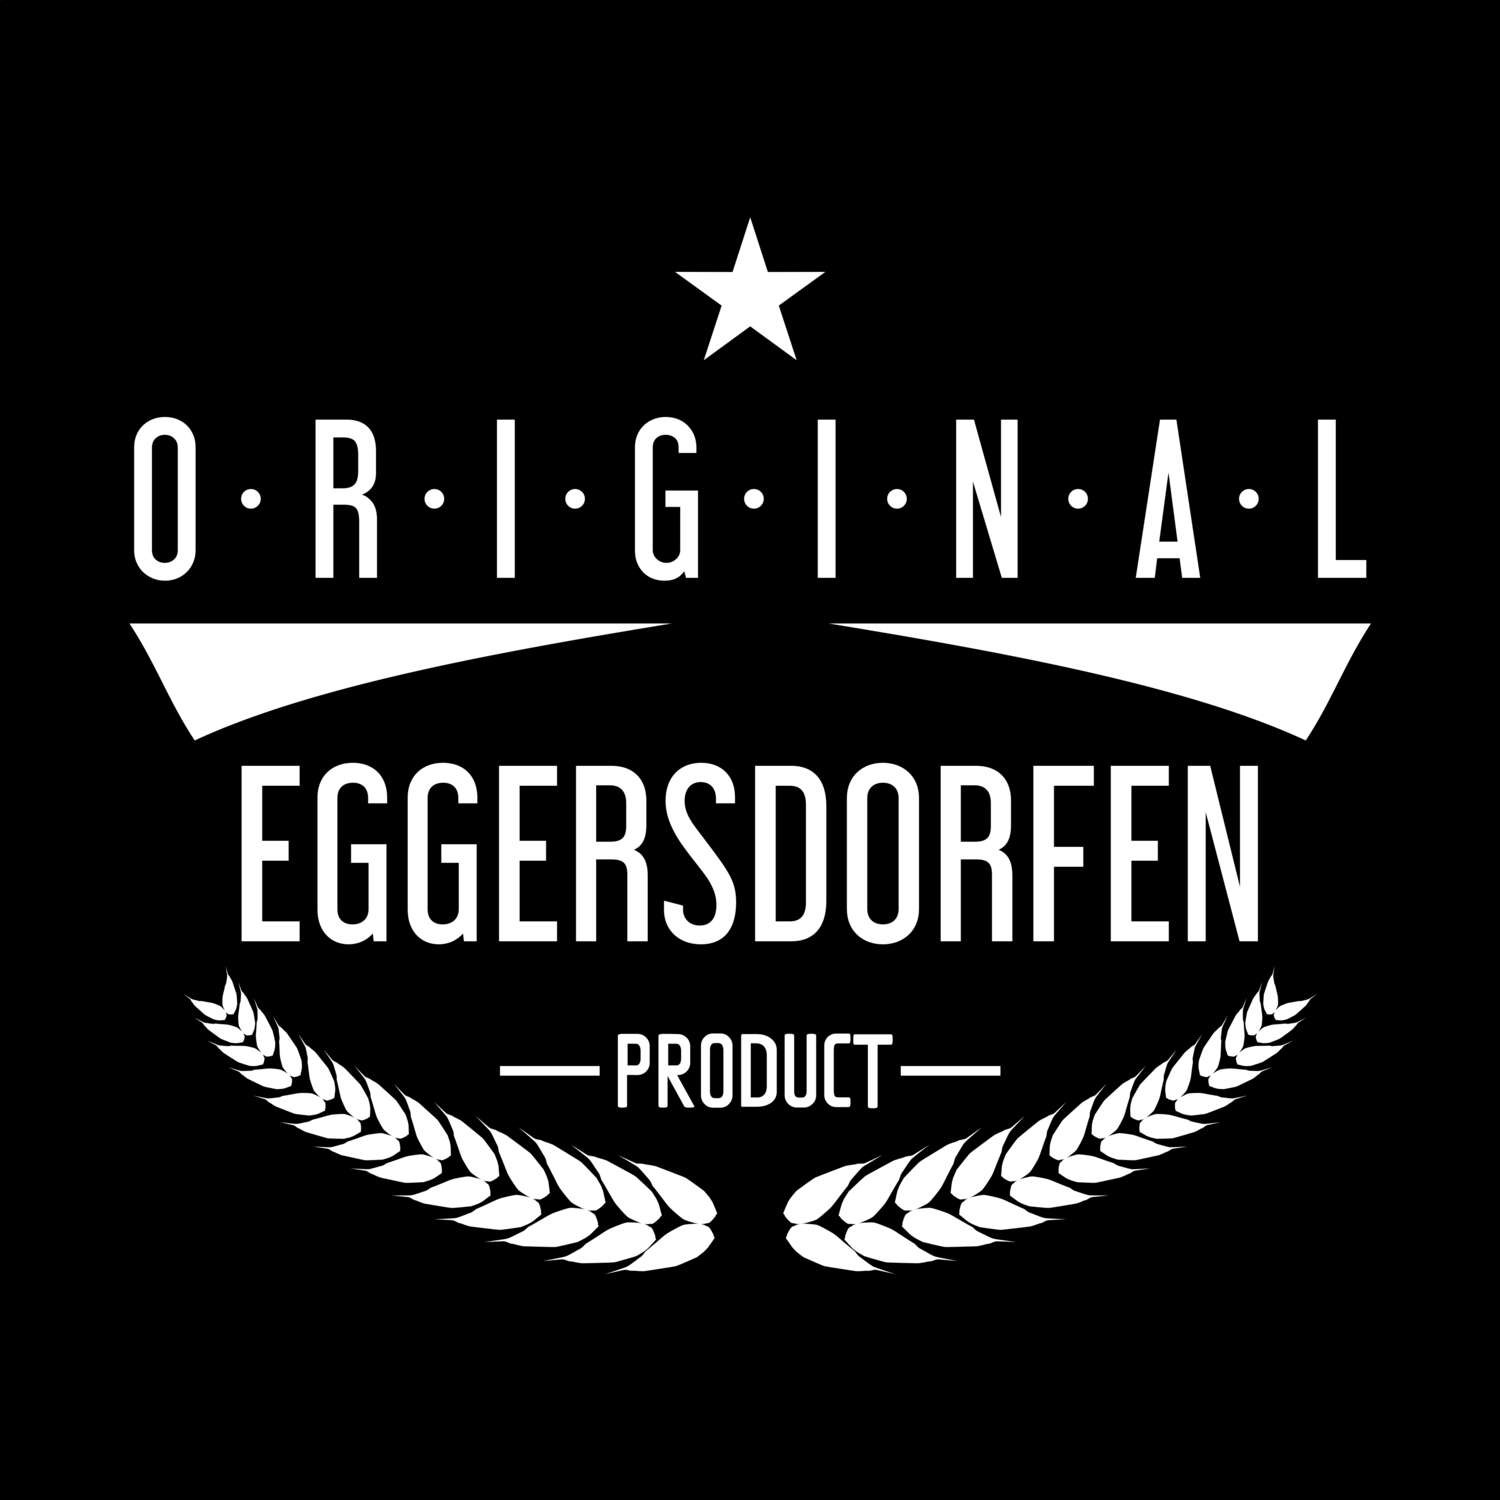 Eggersdorfen T-Shirt »Original Product«